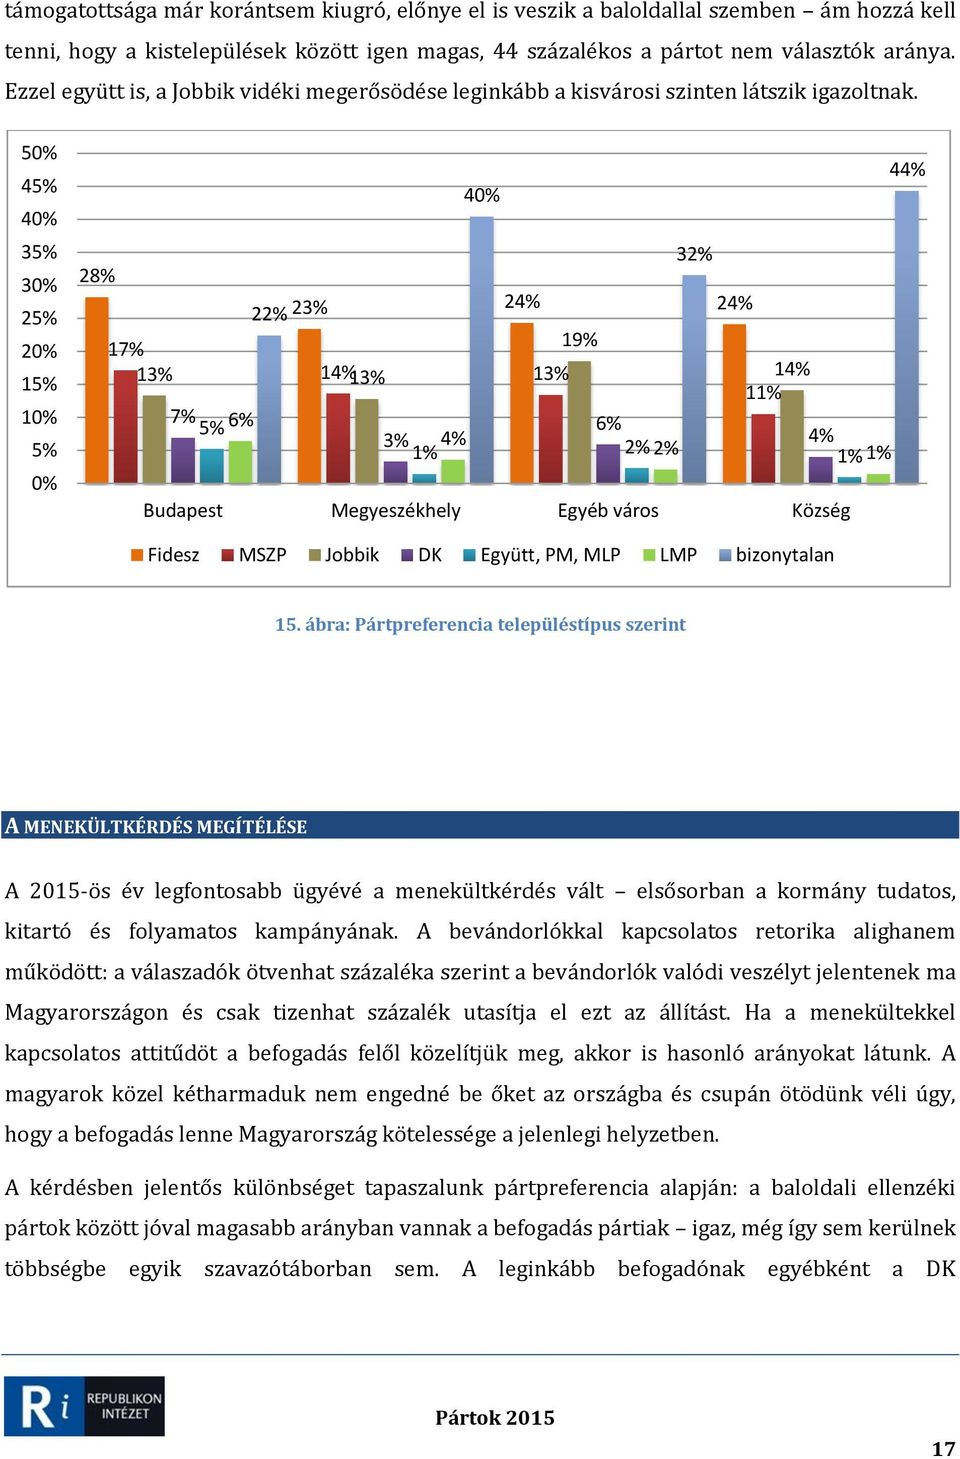 5 45% 35% 3 25% 15% 1 5% 44% 3 28% 23% 24% 24% 2 17% 19% 13% 14% 13% 13% 14% 1 7% 5% 6% 6% 3% 4% 4% Budapest Megyeszékhely Egyéb város Község Fidesz MSZP Jobbik DK Együtt, PM, MLP LMP bizonytalan 15.